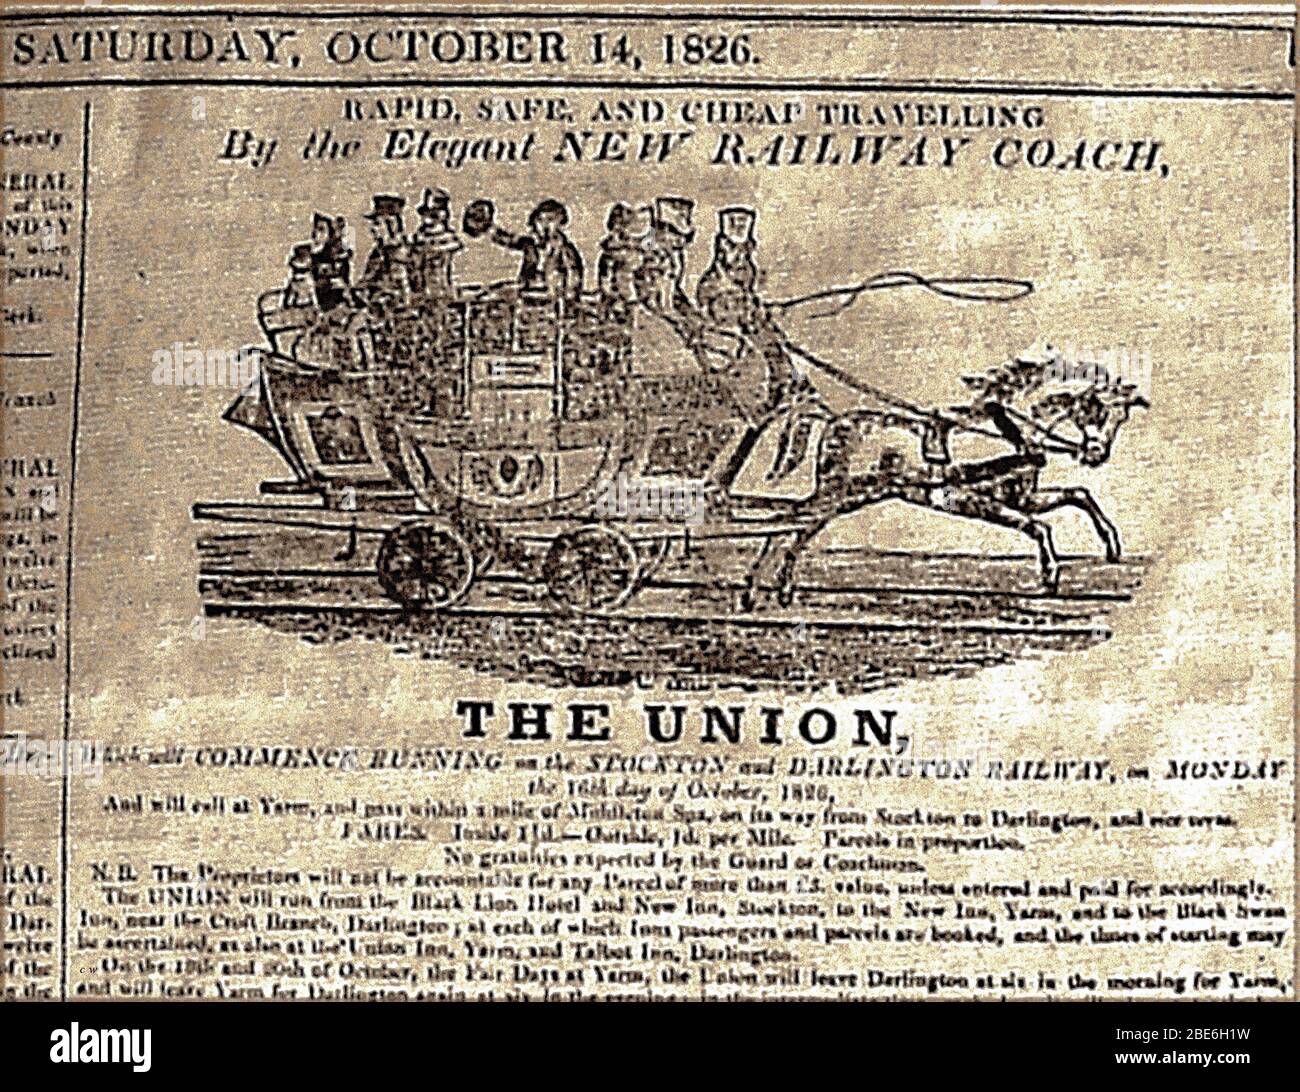 Un vecchio giornale di avviso dall'ottobre 1826 che annuncia l'inizio del servizio Union Horse-disegnato sulla ferrovia da Stockton a Darlington. Pubblicizzato come rapido, economico e sicuro. Nella pubblicità sono menzionati diversi paesi, locande e alberghi. Foto Stock